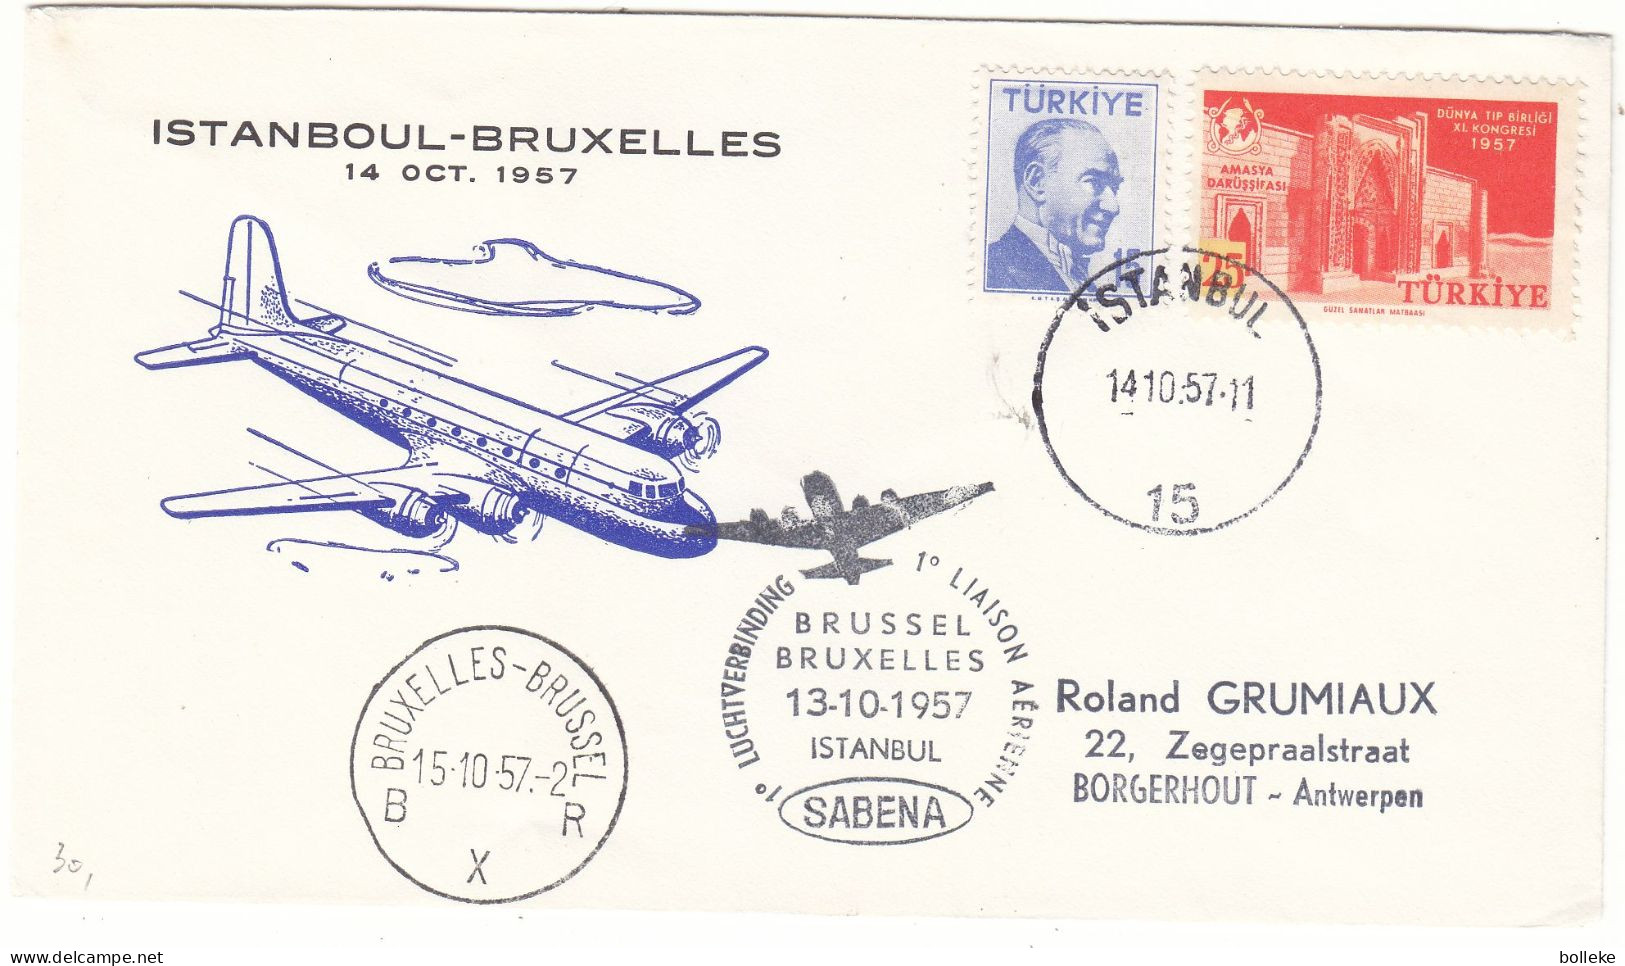 Turquie - Lettre De 1957 - Oblit Istanbul - 1 Er Vol SABENA Bruxelles Istanbul - - Briefe U. Dokumente